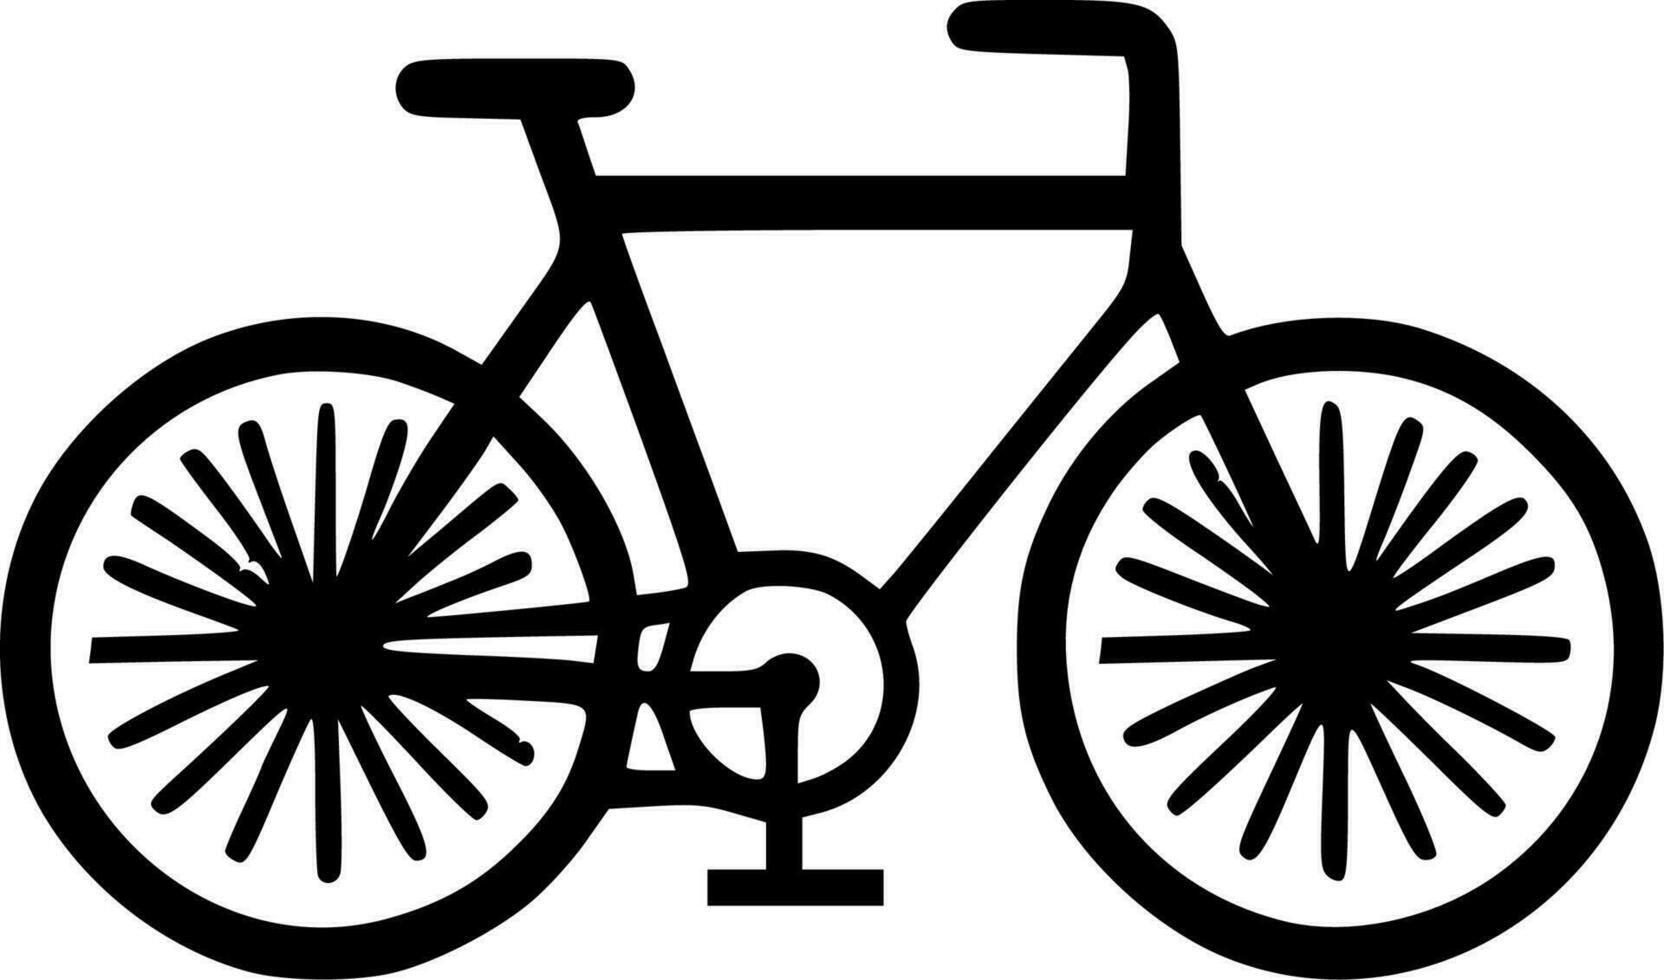 Fahrrad - - hoch Qualität Vektor Logo - - Vektor Illustration Ideal zum T-Shirt Grafik